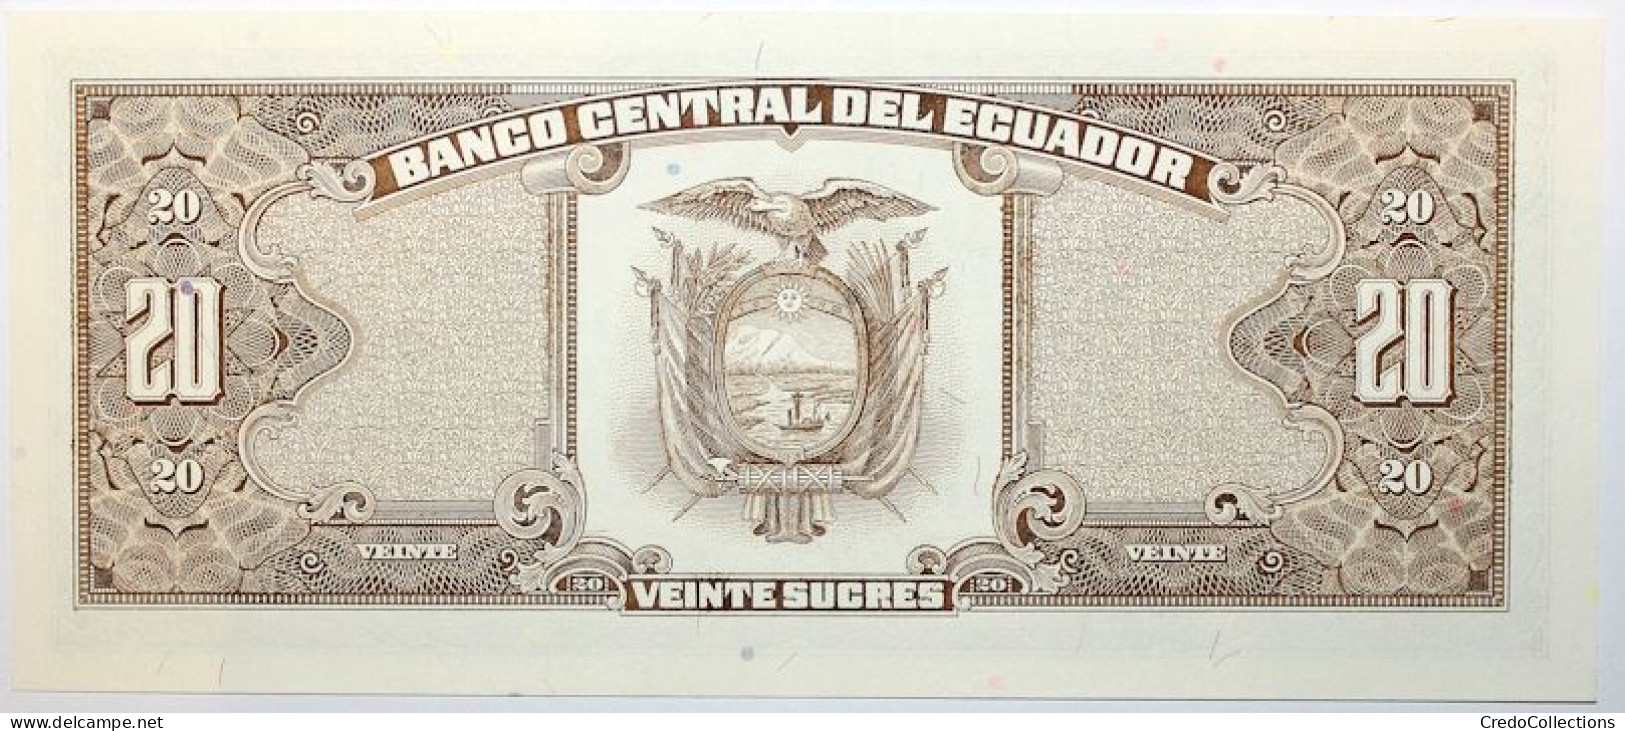 Équateur - 20 Sucres - 1988 - PICK 121Аa.7 - NEUF - Ecuador